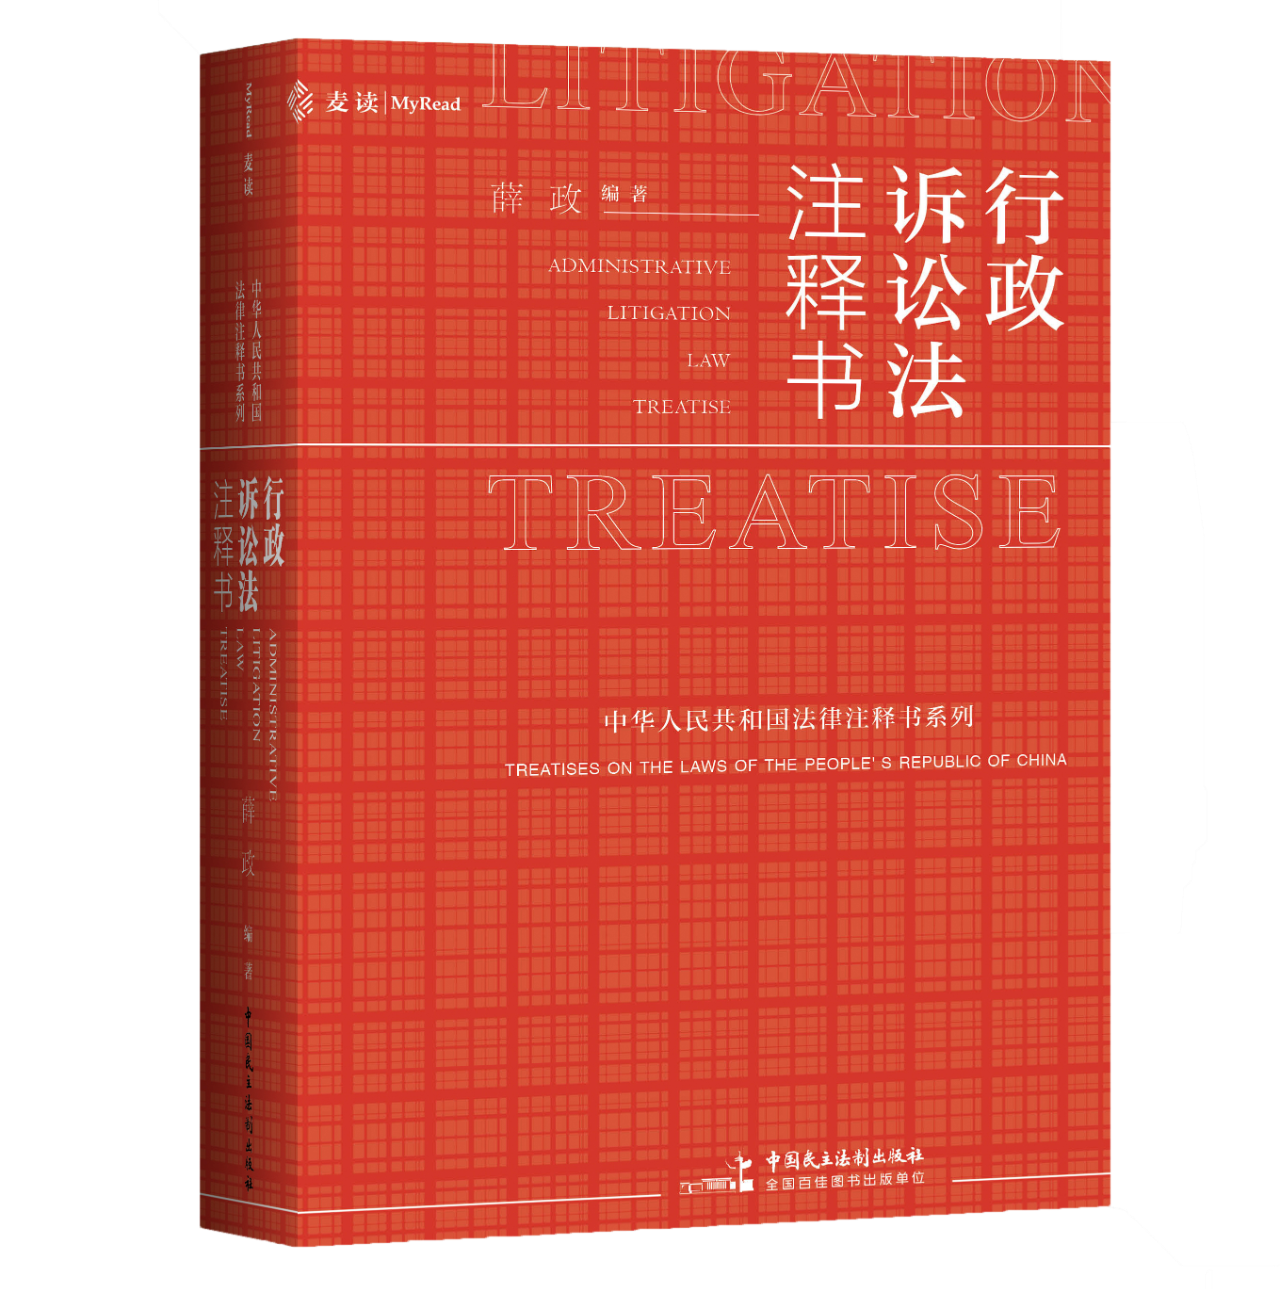 《行政诉讼法注释书》（薛政编著，中国民主法制出版社2020年10月出版）